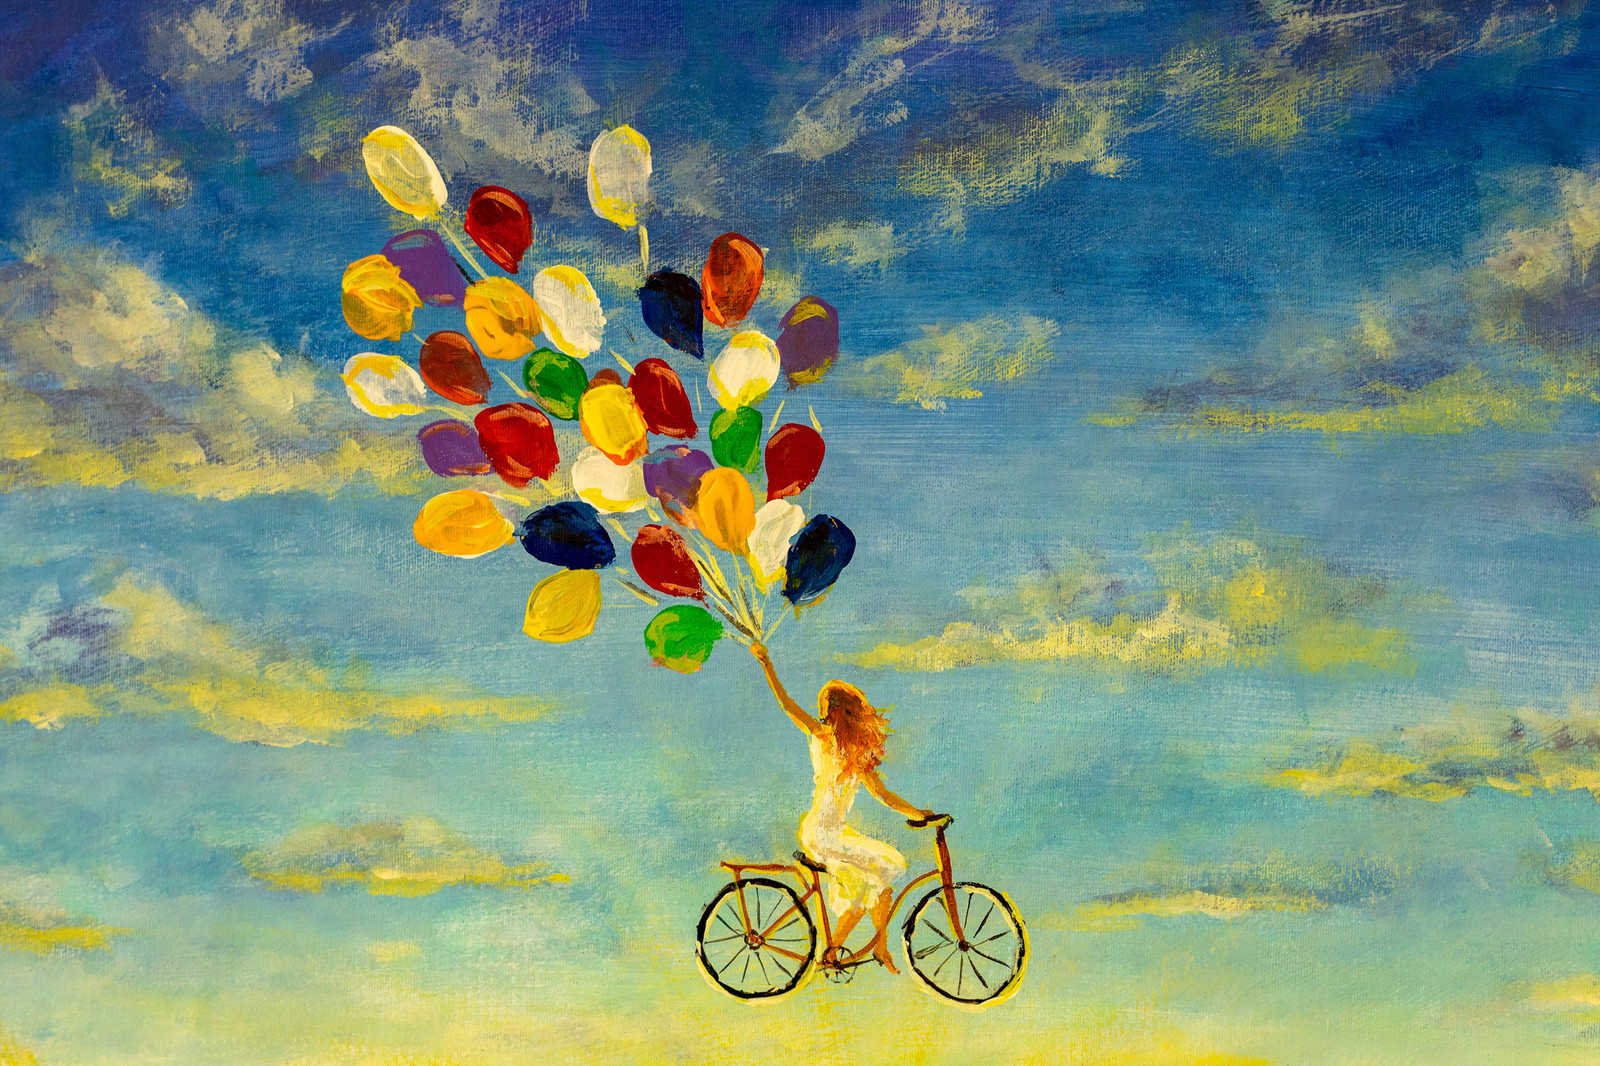             Cuadro en lienzo con Mujer en bicicleta en el cielo Pintura - 0,90 m x 0,60 m
        